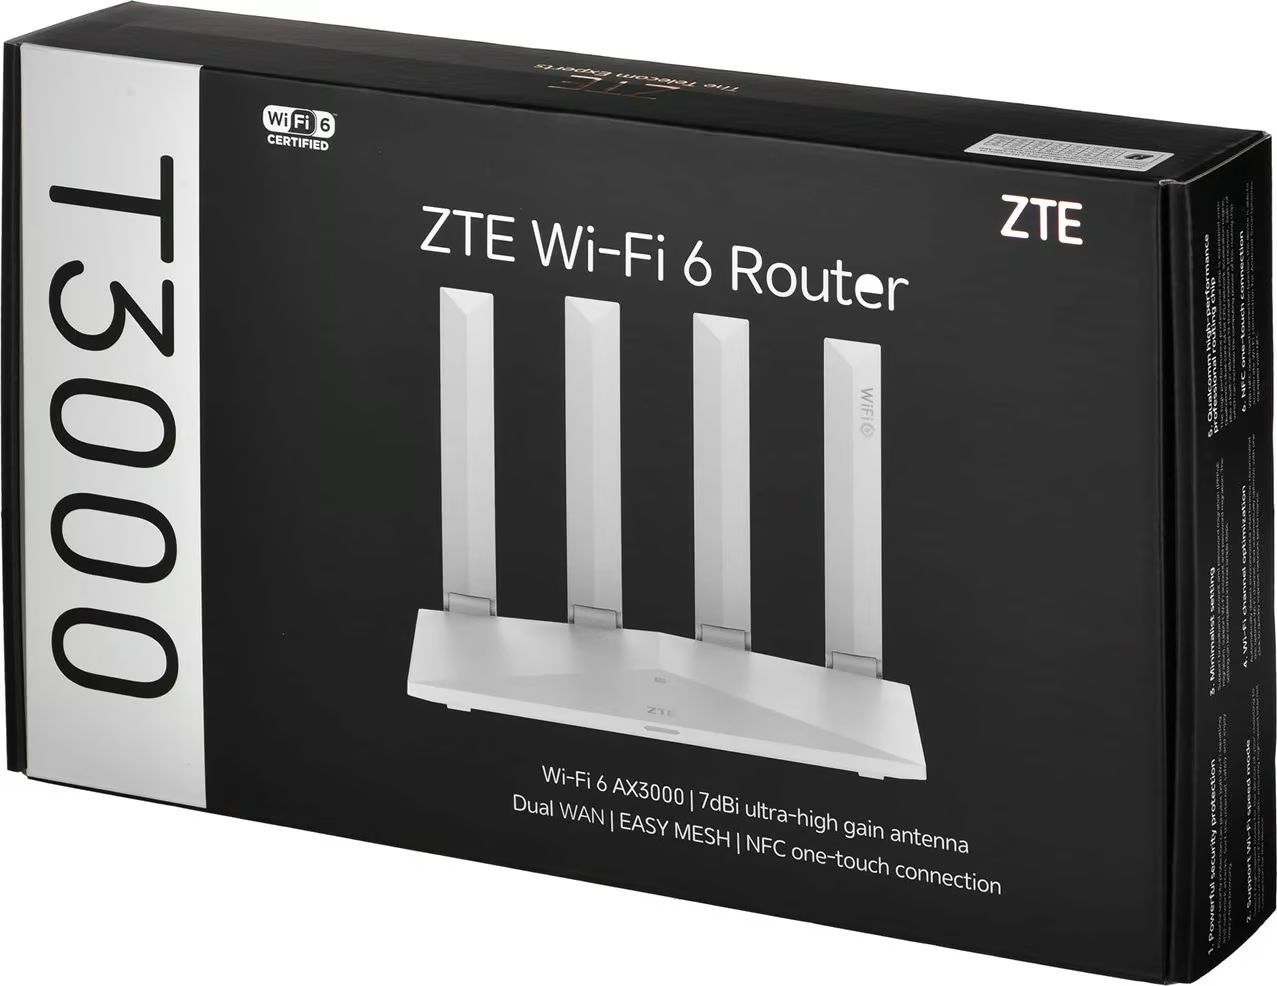 ZTE T3000 WiFi 6 Router